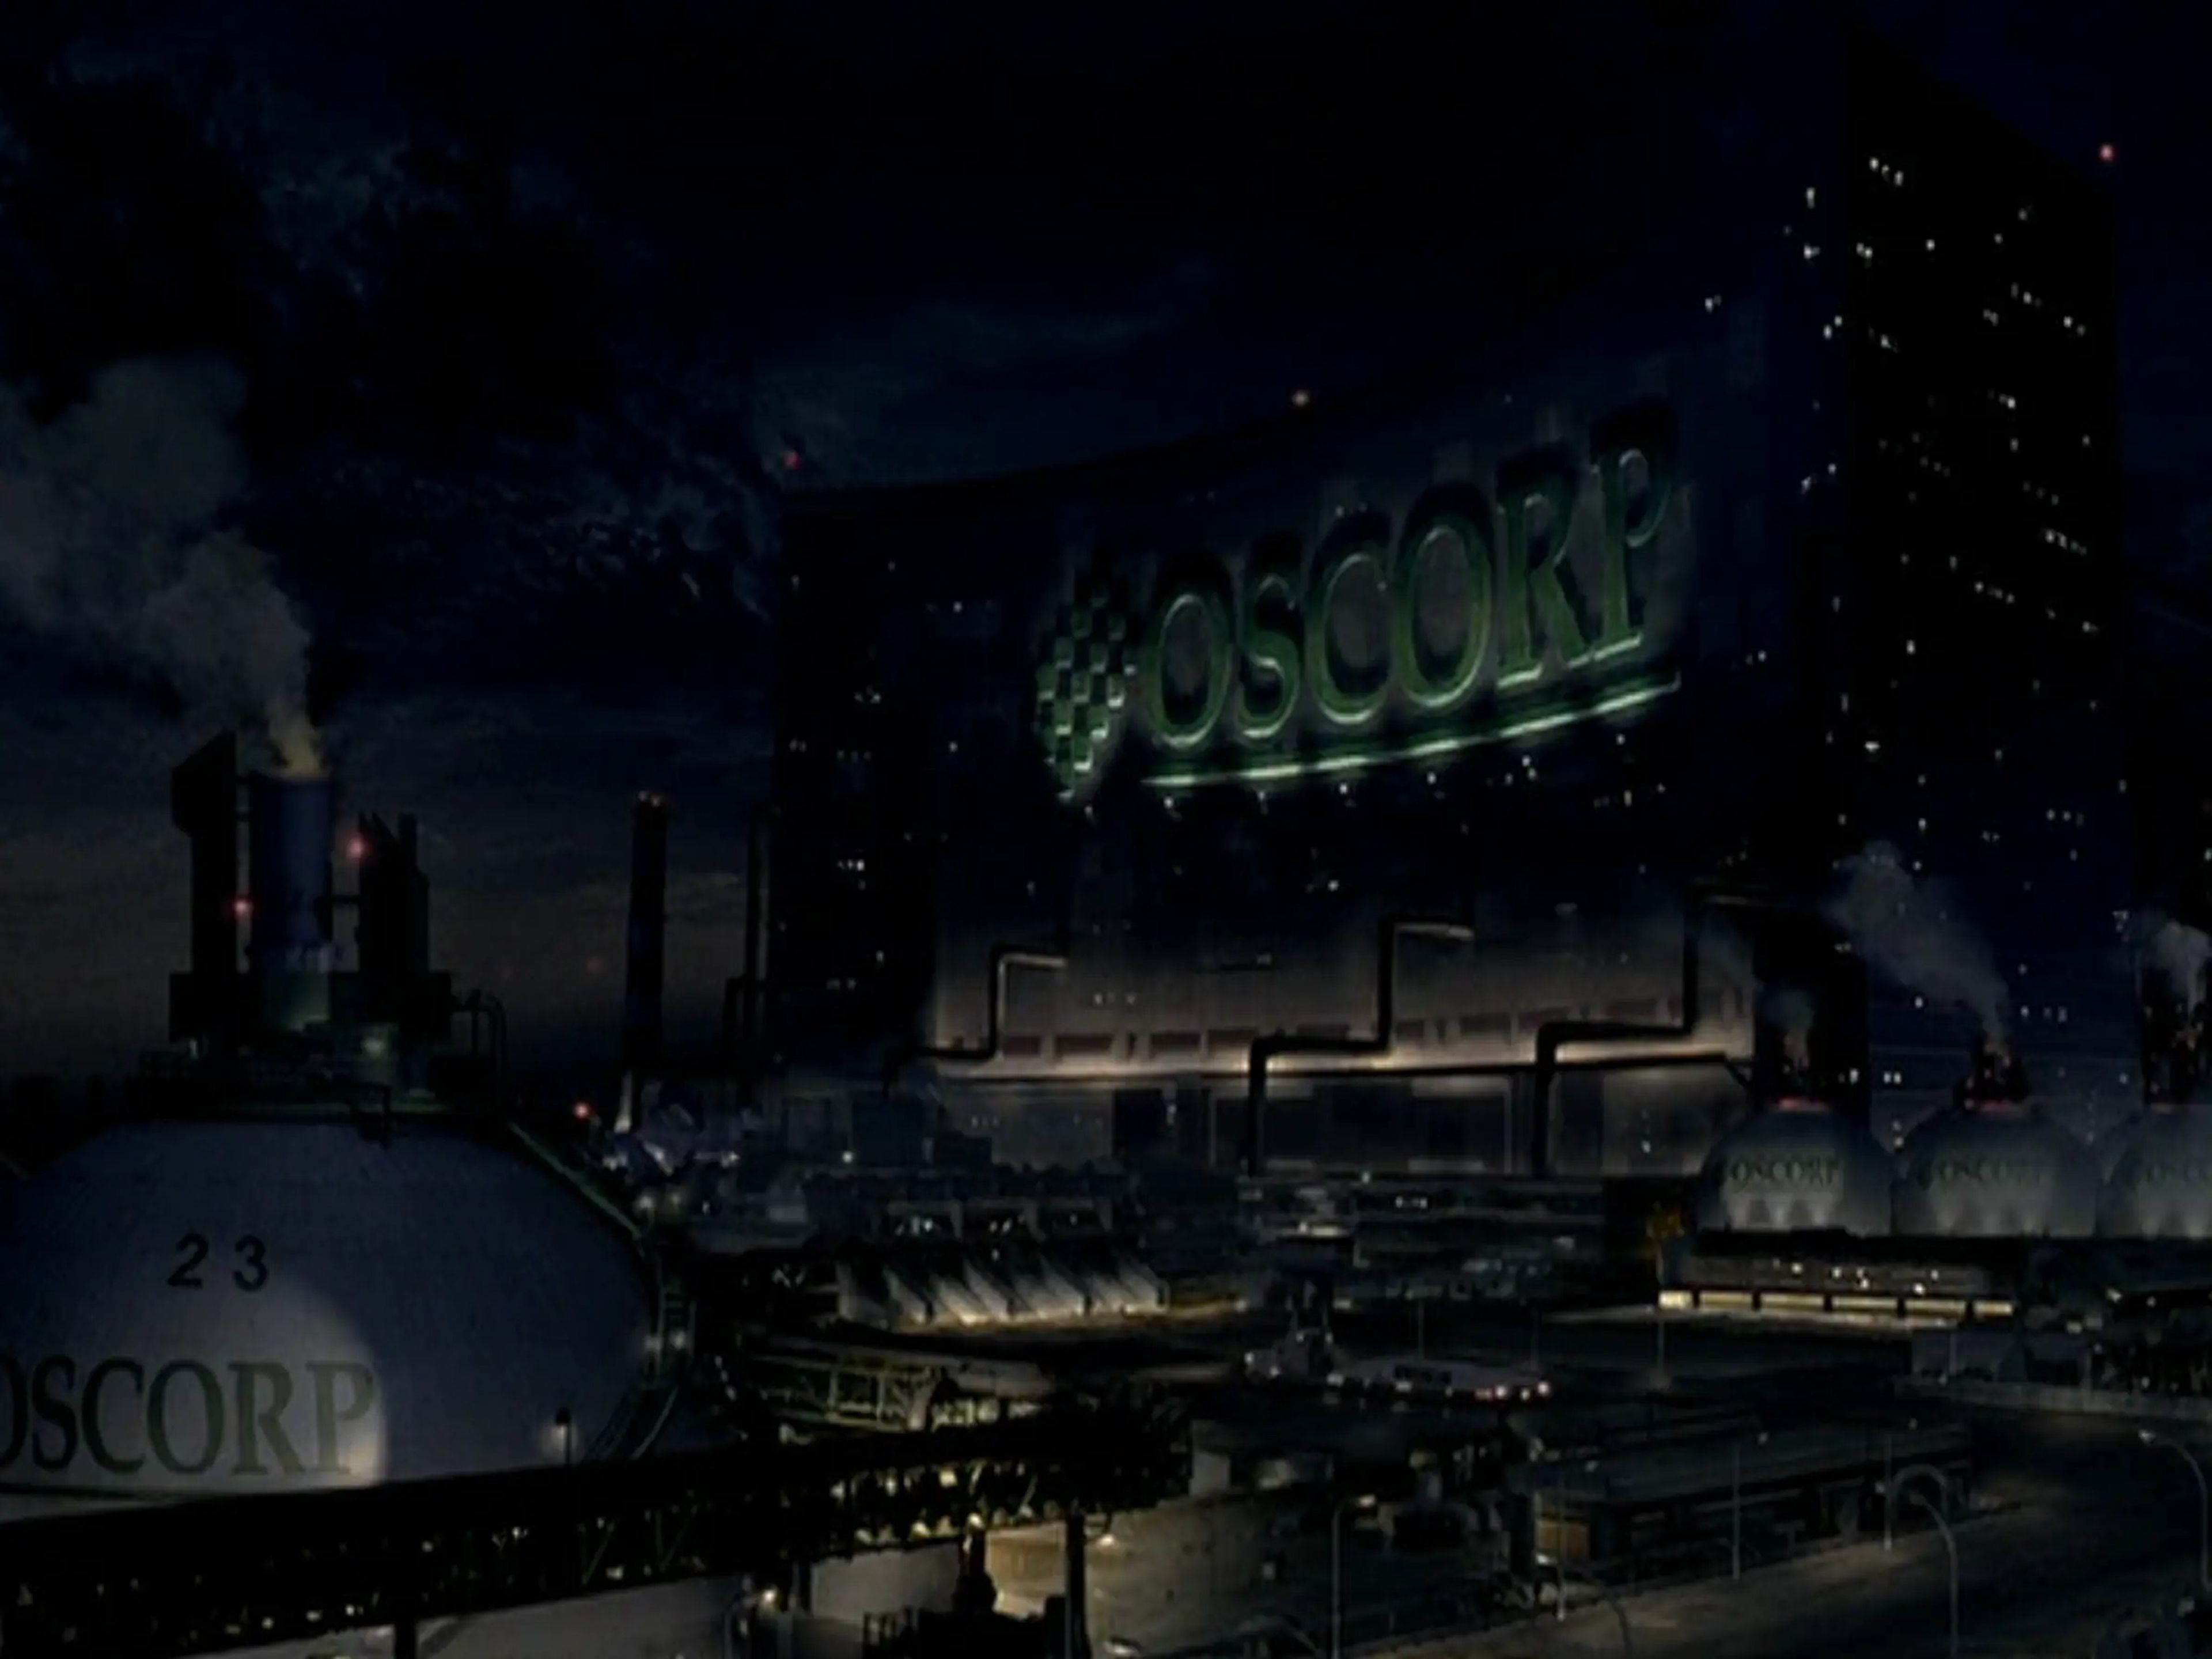 El edificio Oscorp en 'Spider-Man' de Sam Raimi.